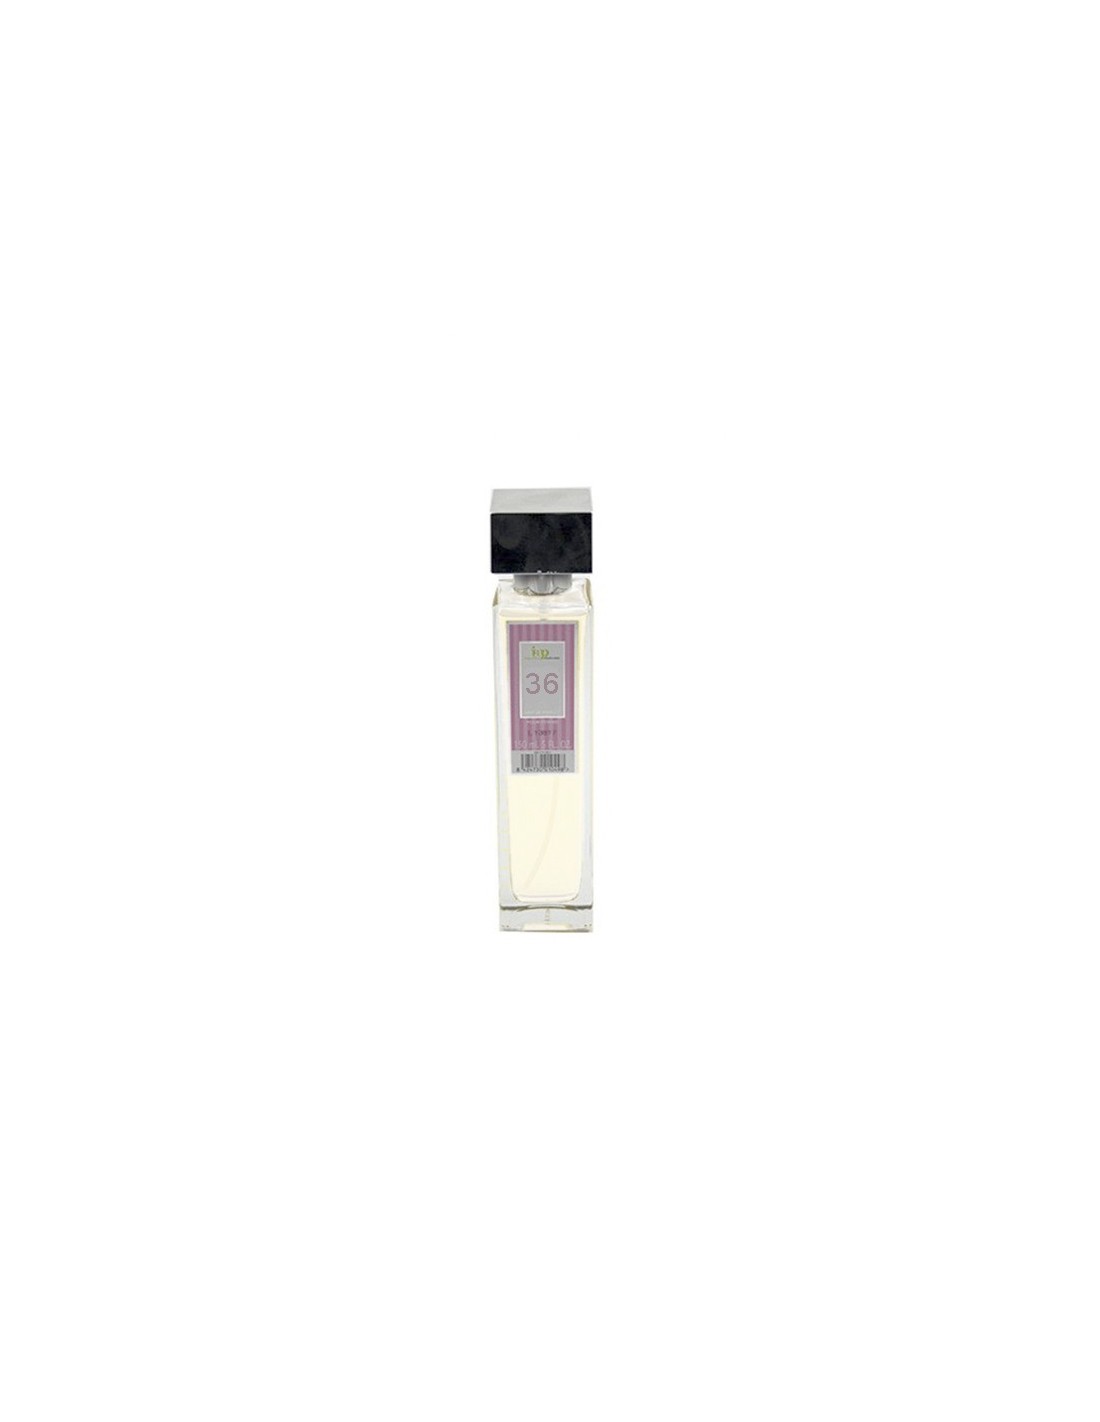 IAP Perfume Mujer N36 150ml